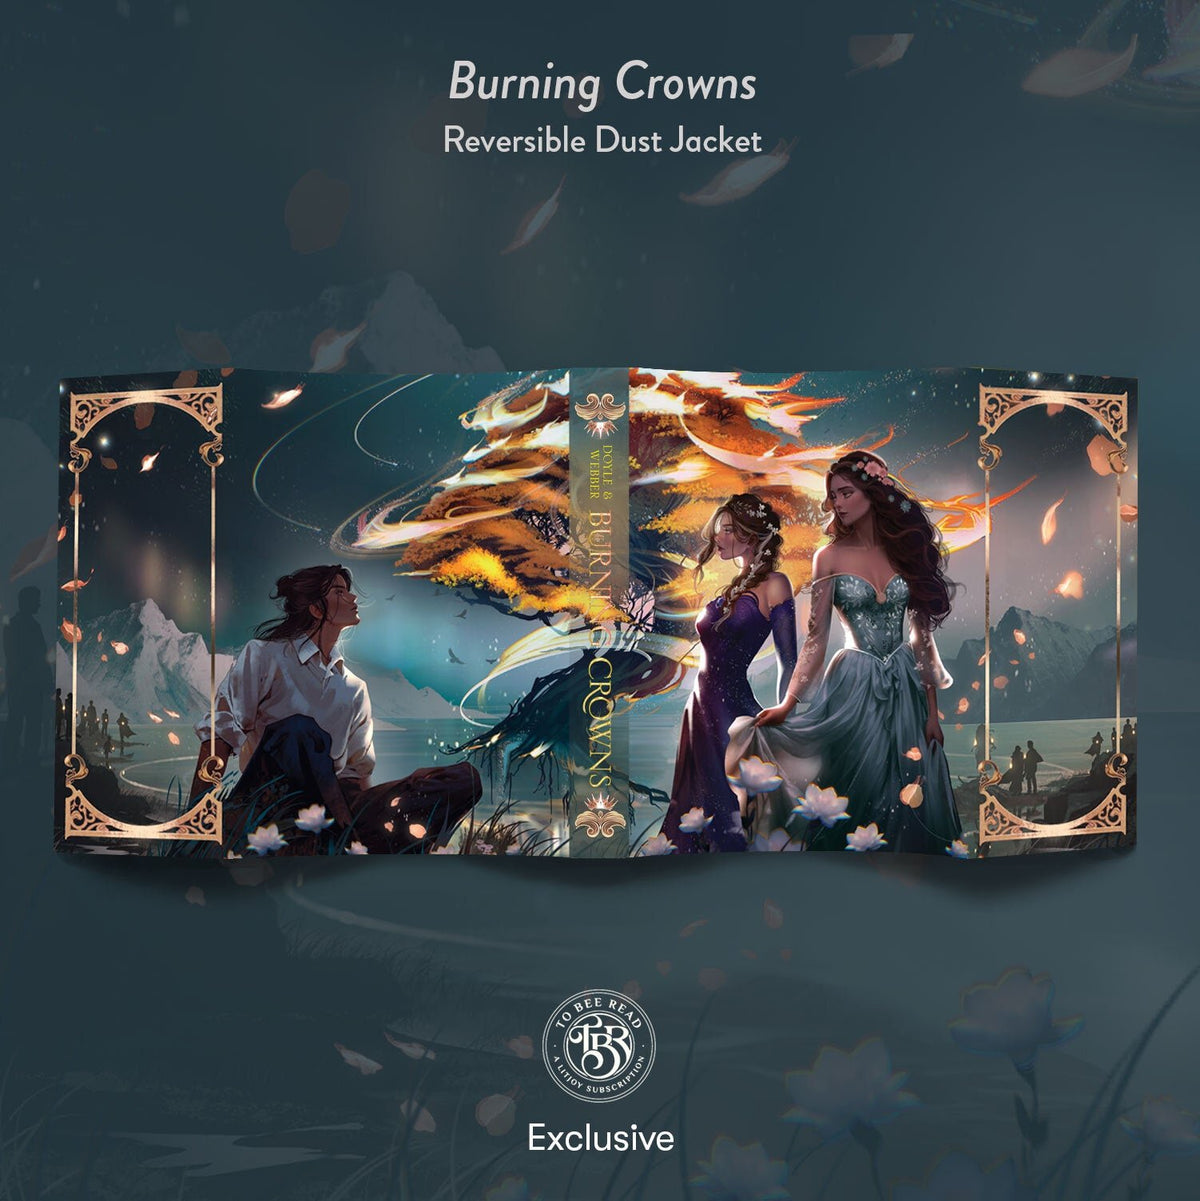 Burning Crowns by Catherine Doyle &amp; Katherine Webber